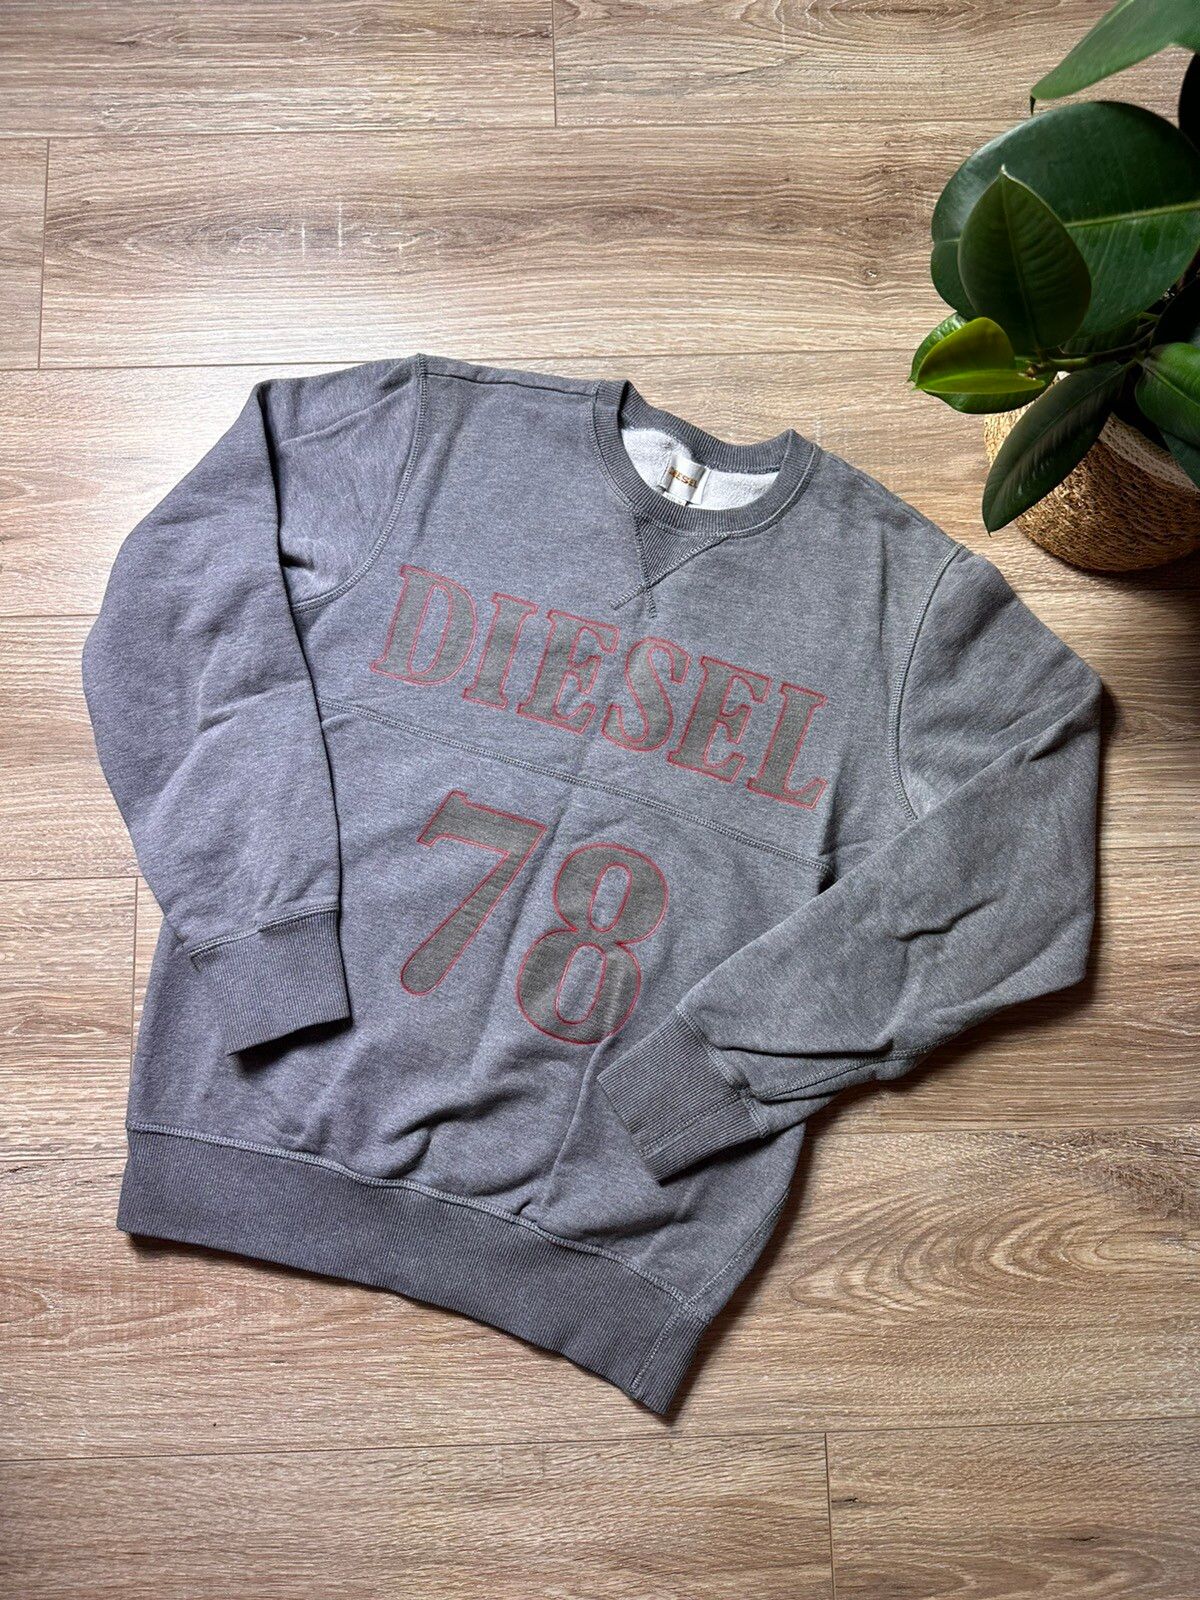 Pre-owned Diesel X Vintage Diesel Vintage Grey Sweatshirt Big Logo